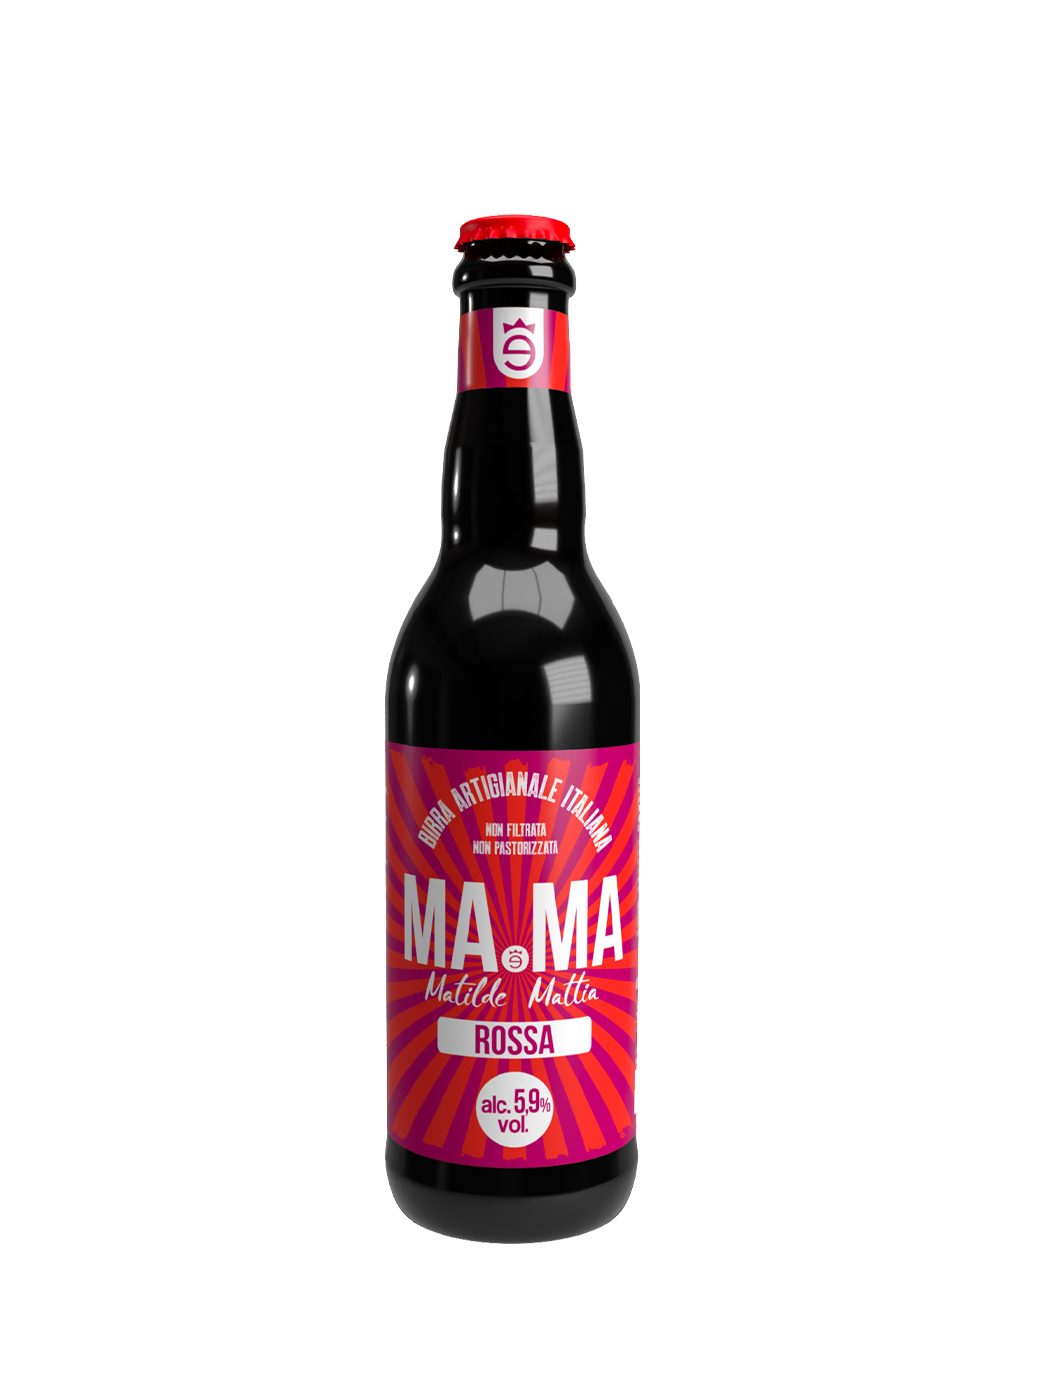 Пиво MaMa Rossa полутемное нефильтрованное 5,9% 0,33л стекло